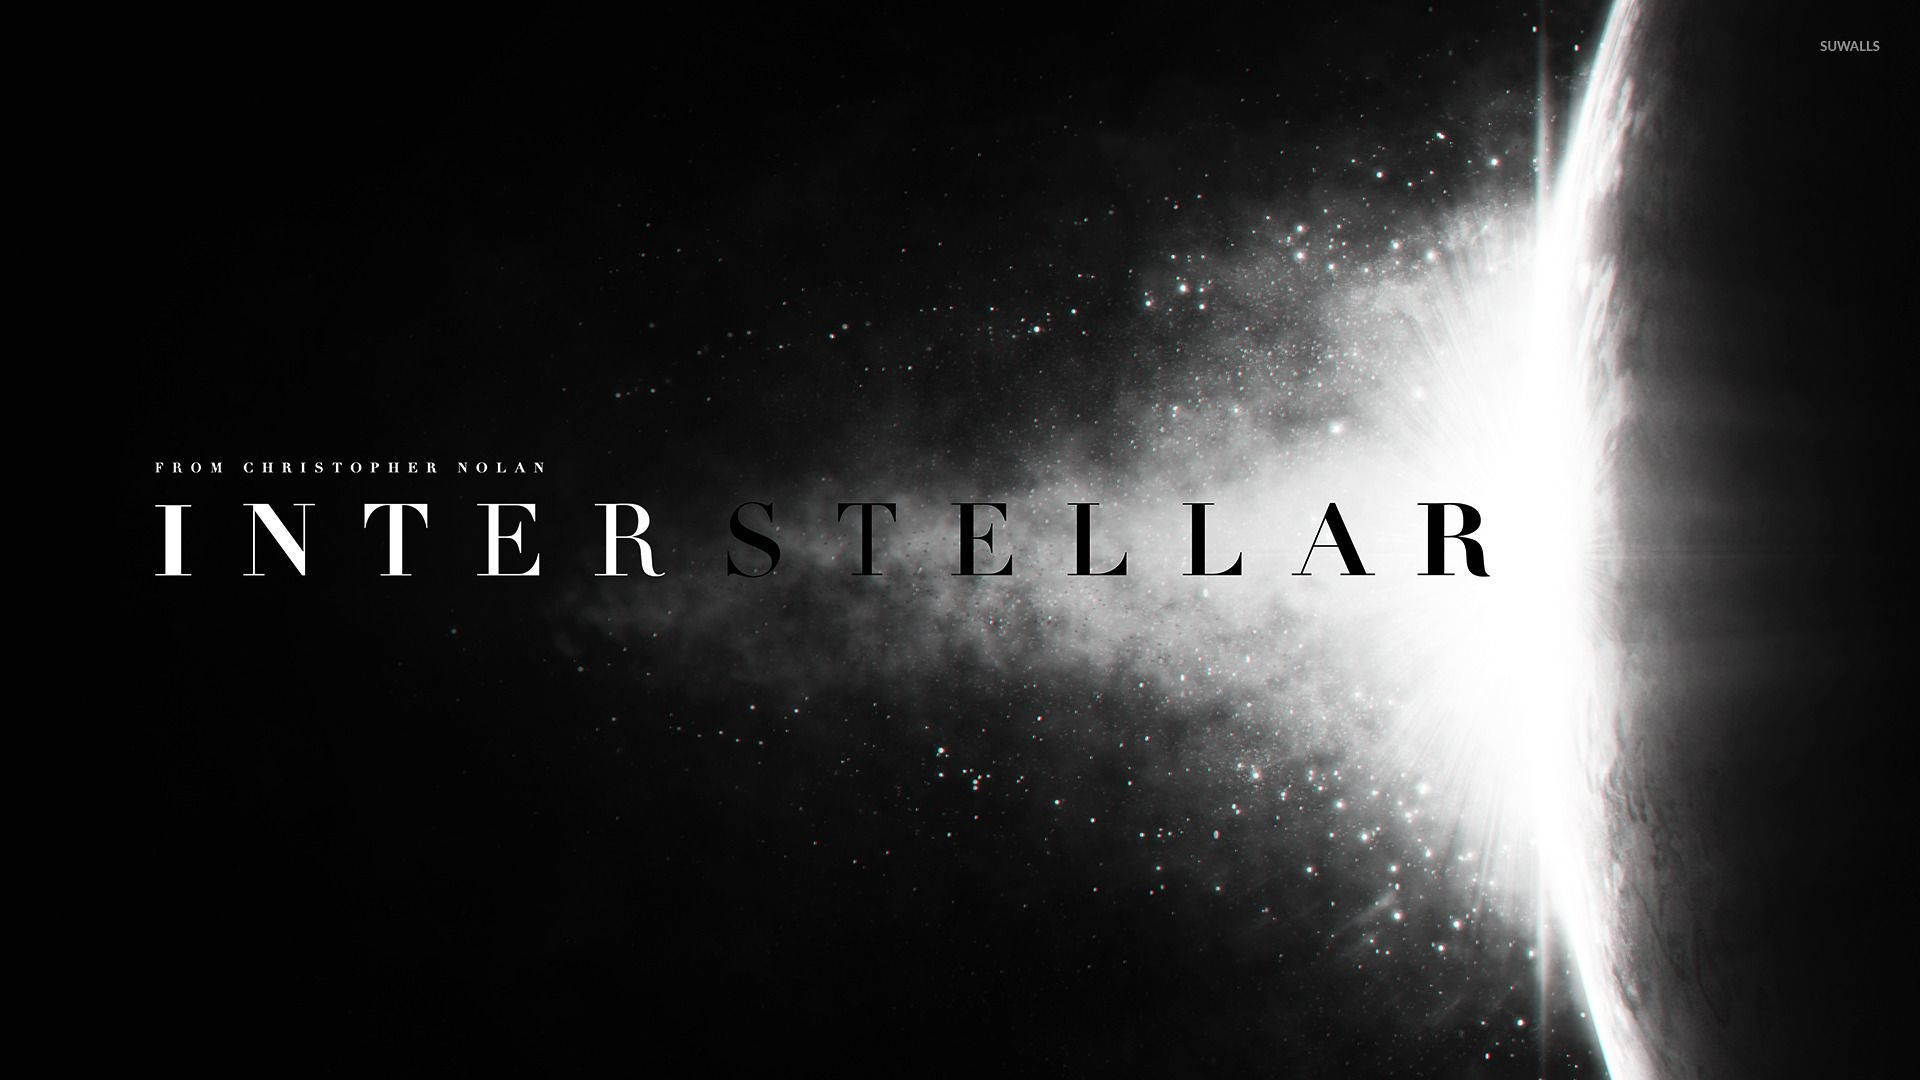 Monochrome Blast Interstellar Poster Background